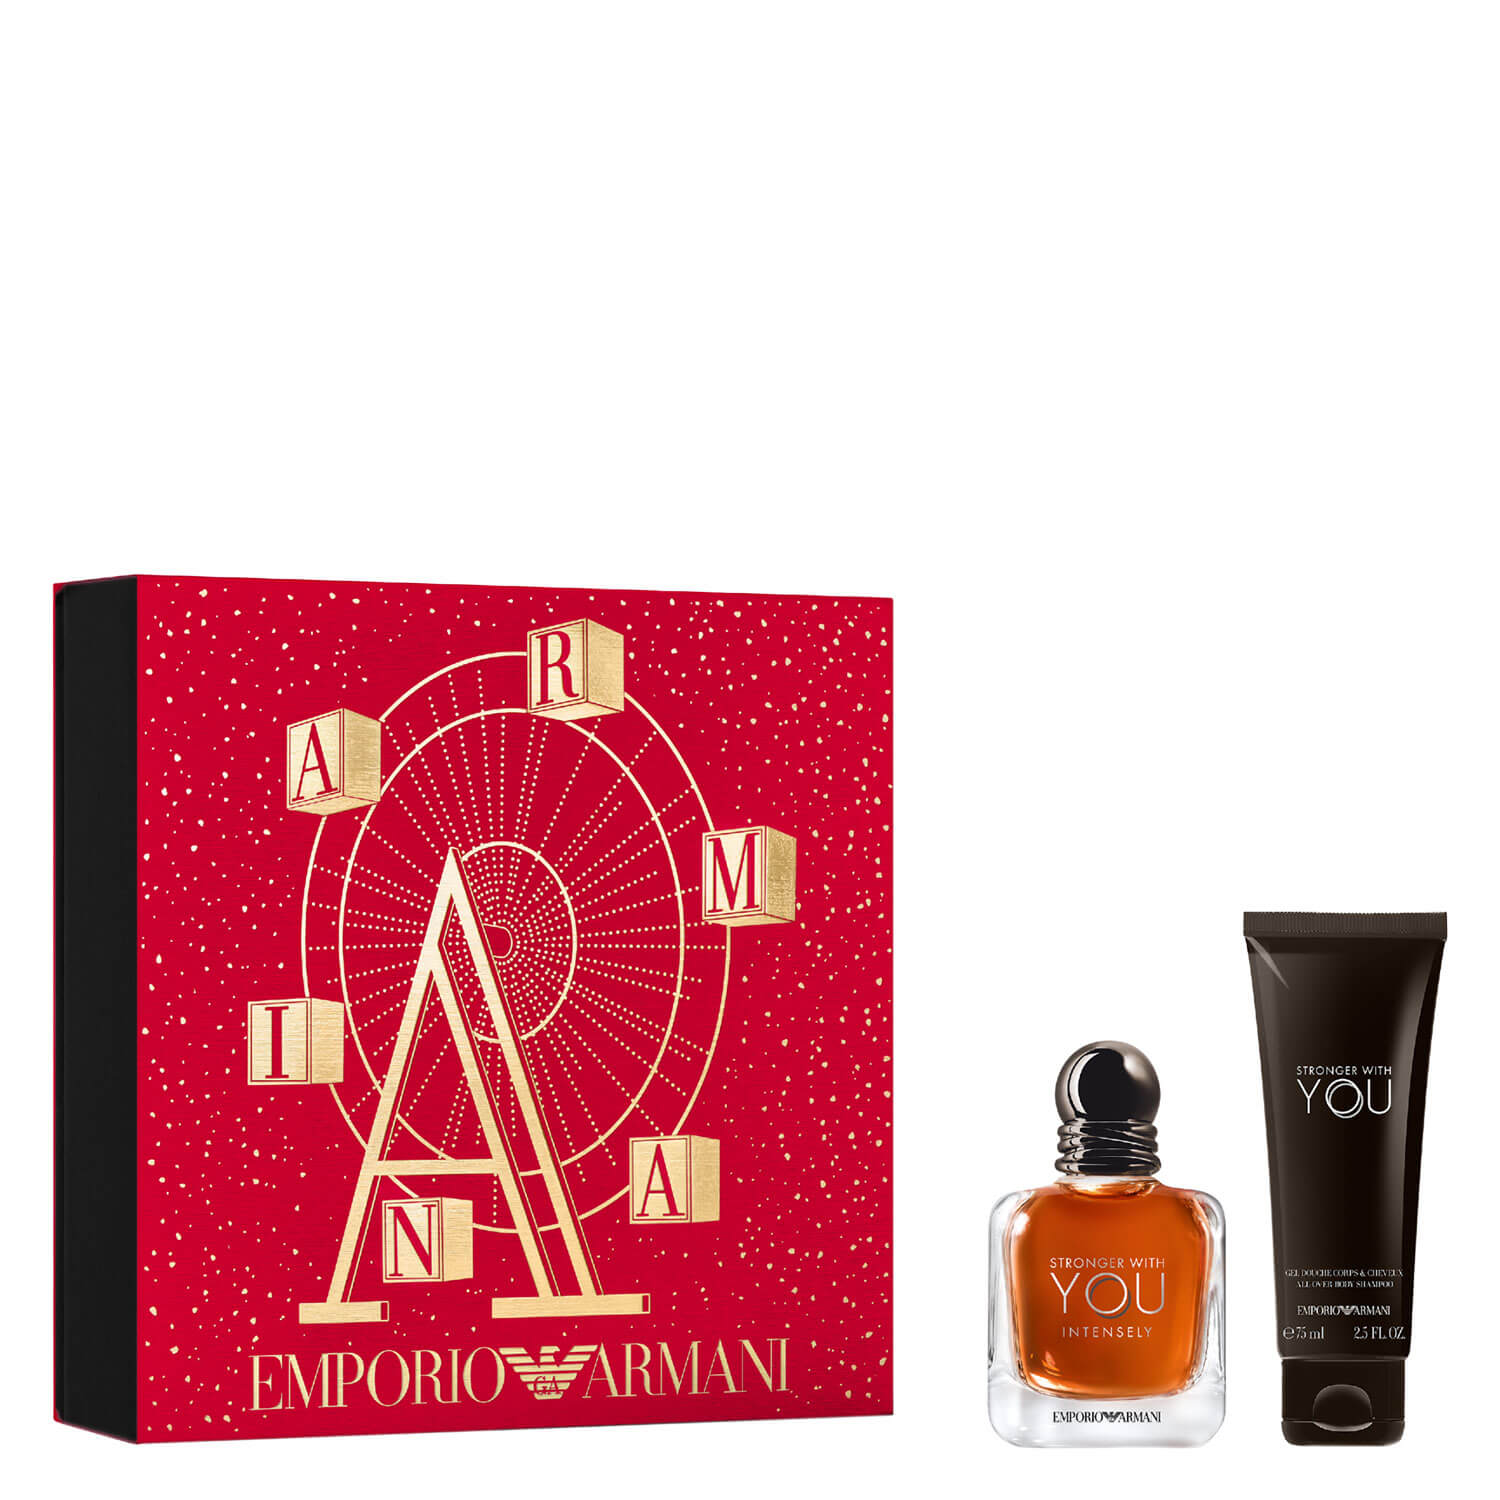 Kalksten Almægtig At håndtere Giorgio Armani Emporio Armani - Stronger With You Intense Eau de Parfum Set  | PerfectHair.ch